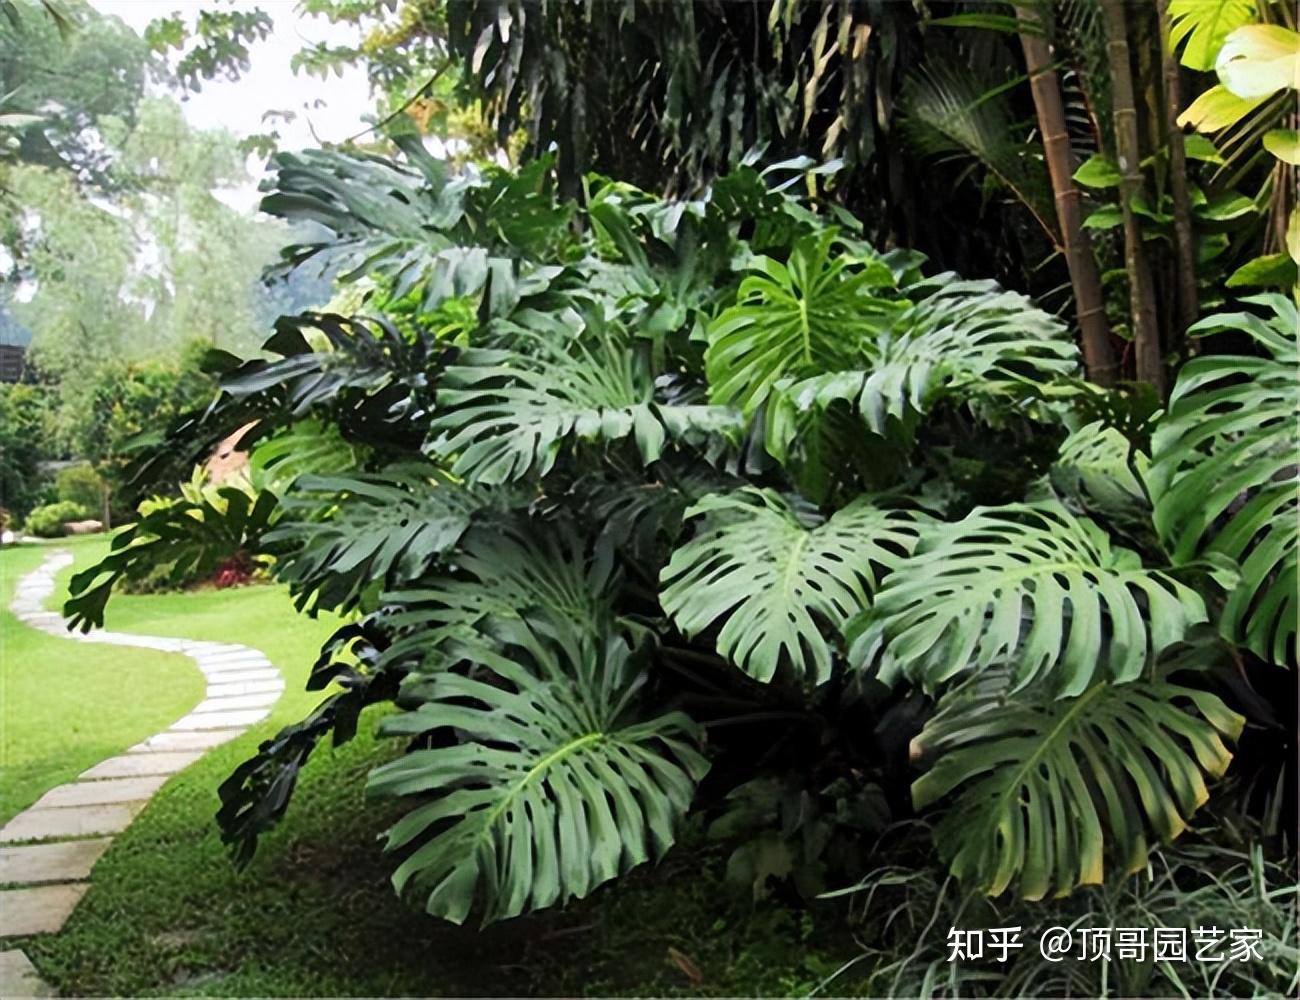 一种很常见的观叶植物,常用于室内盆栽种植,也可以在南方地区庭院种植